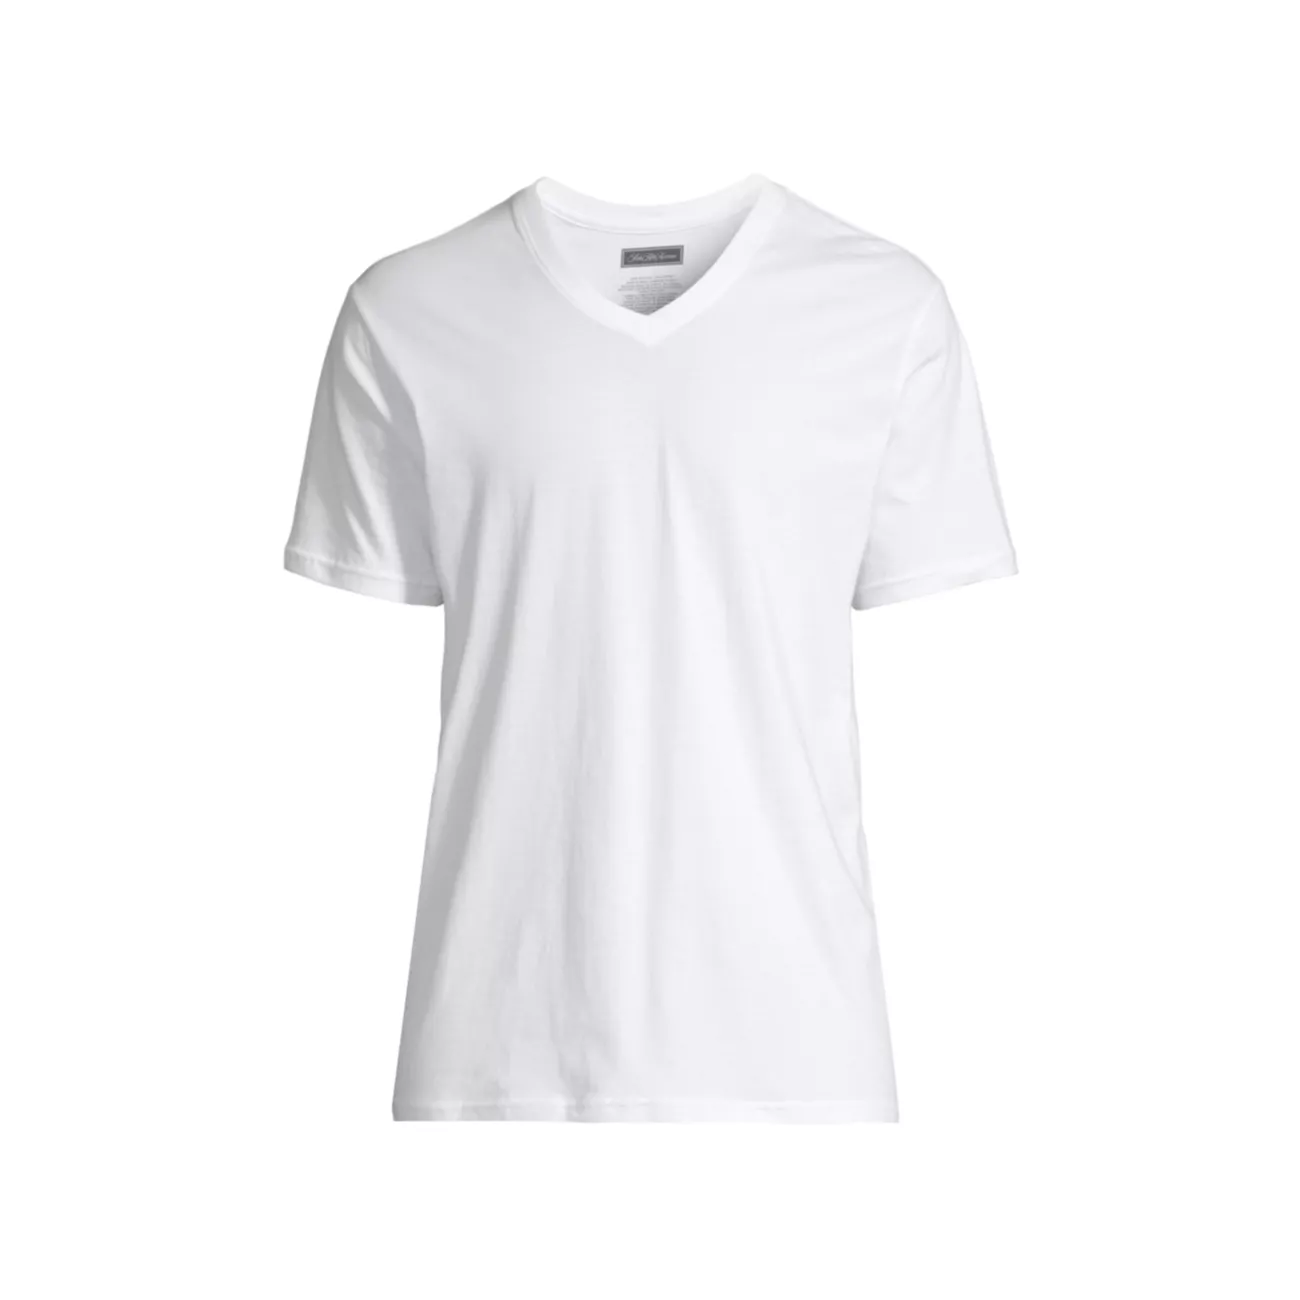 КОЛЛЕКЦИЯ Набор из 3 футболок из хлопка пима с v-образным вырезом Saks Fifth Avenue